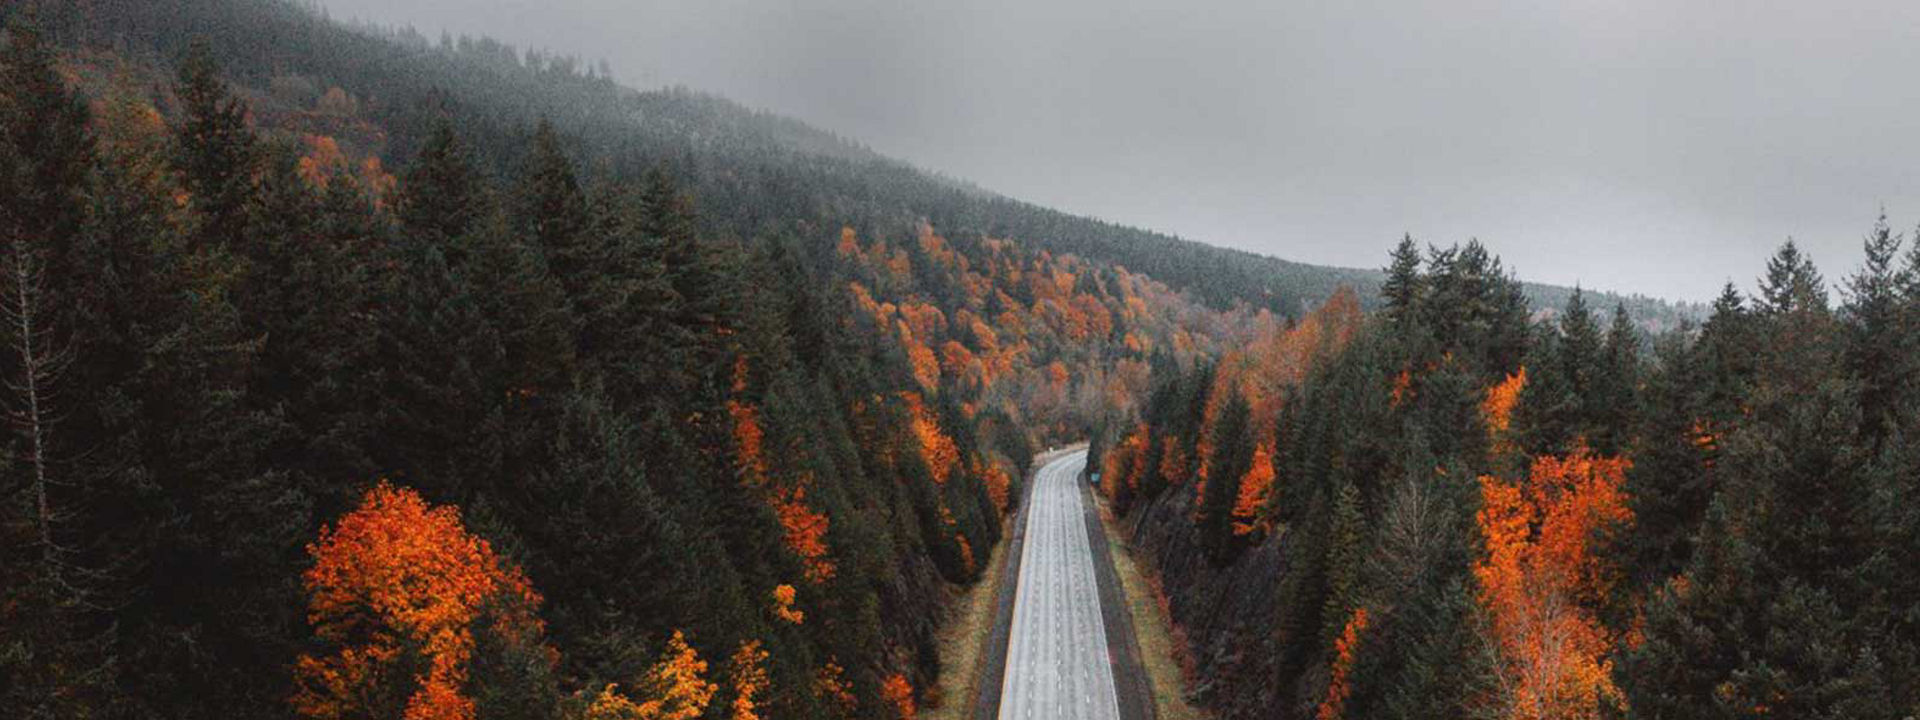 Dit is een afbeelding van een lege snelweg die door een bos loopt in de herfst om te tonen dat de Weather Control geschikt is voor alle seizoenen